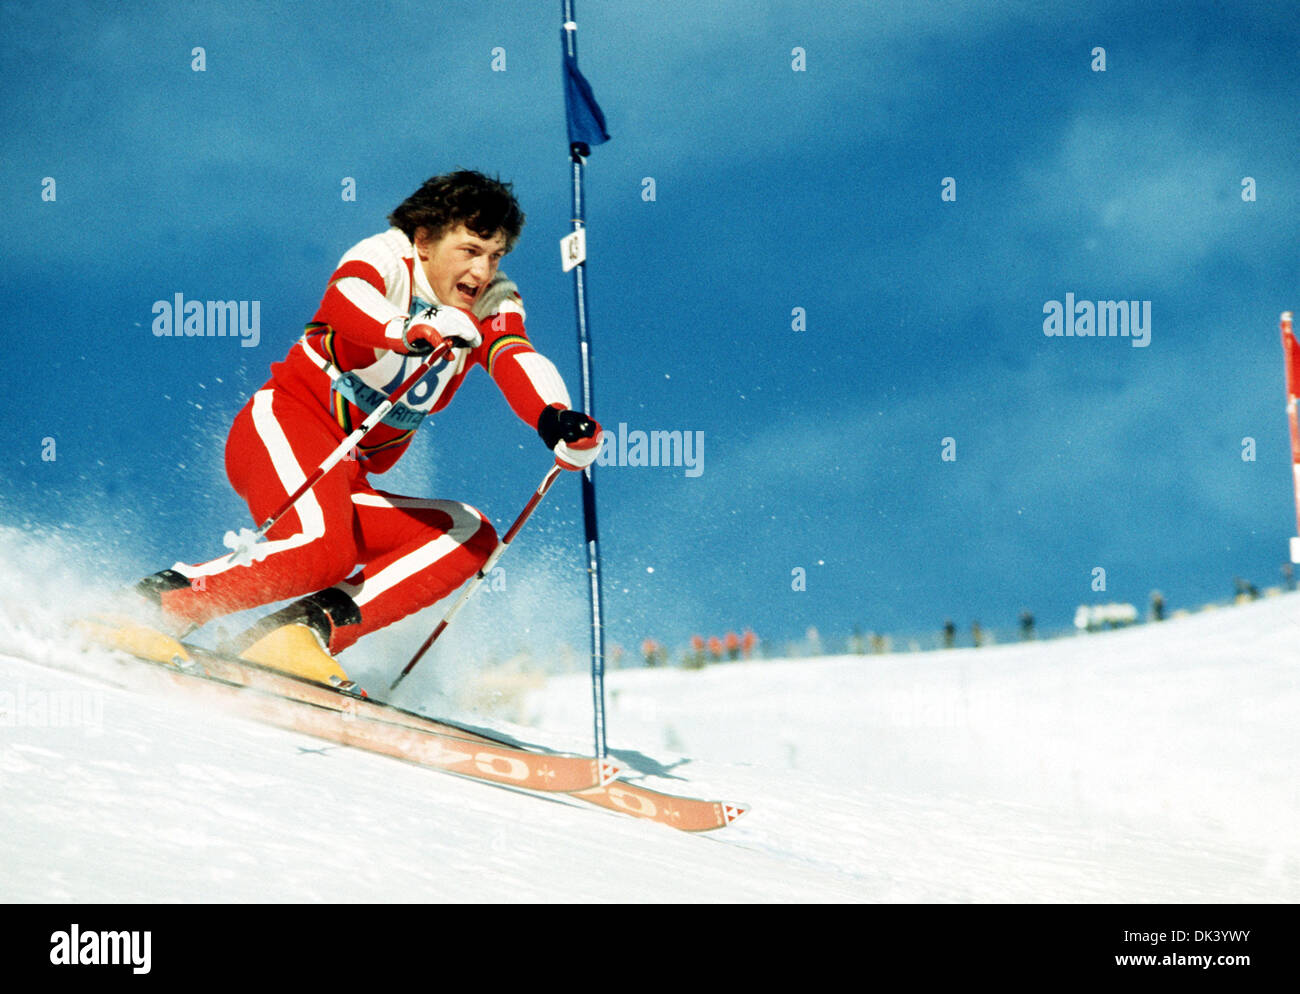 Datei - eine undatiertes Archiv Bild zeigt österreichischer Skifahrer Franz Klammer im Wettbewerb in der Slalom-Ski-Event von der 23 alpine Skiweltmeisterschaft 1974 in St. Moritz, Schweiz. Franz Klammer wird 60 Jahre am 3. Dezember 2013 verwandeln. Foto: HEINRICH SANDEN/Dpa Stockfoto